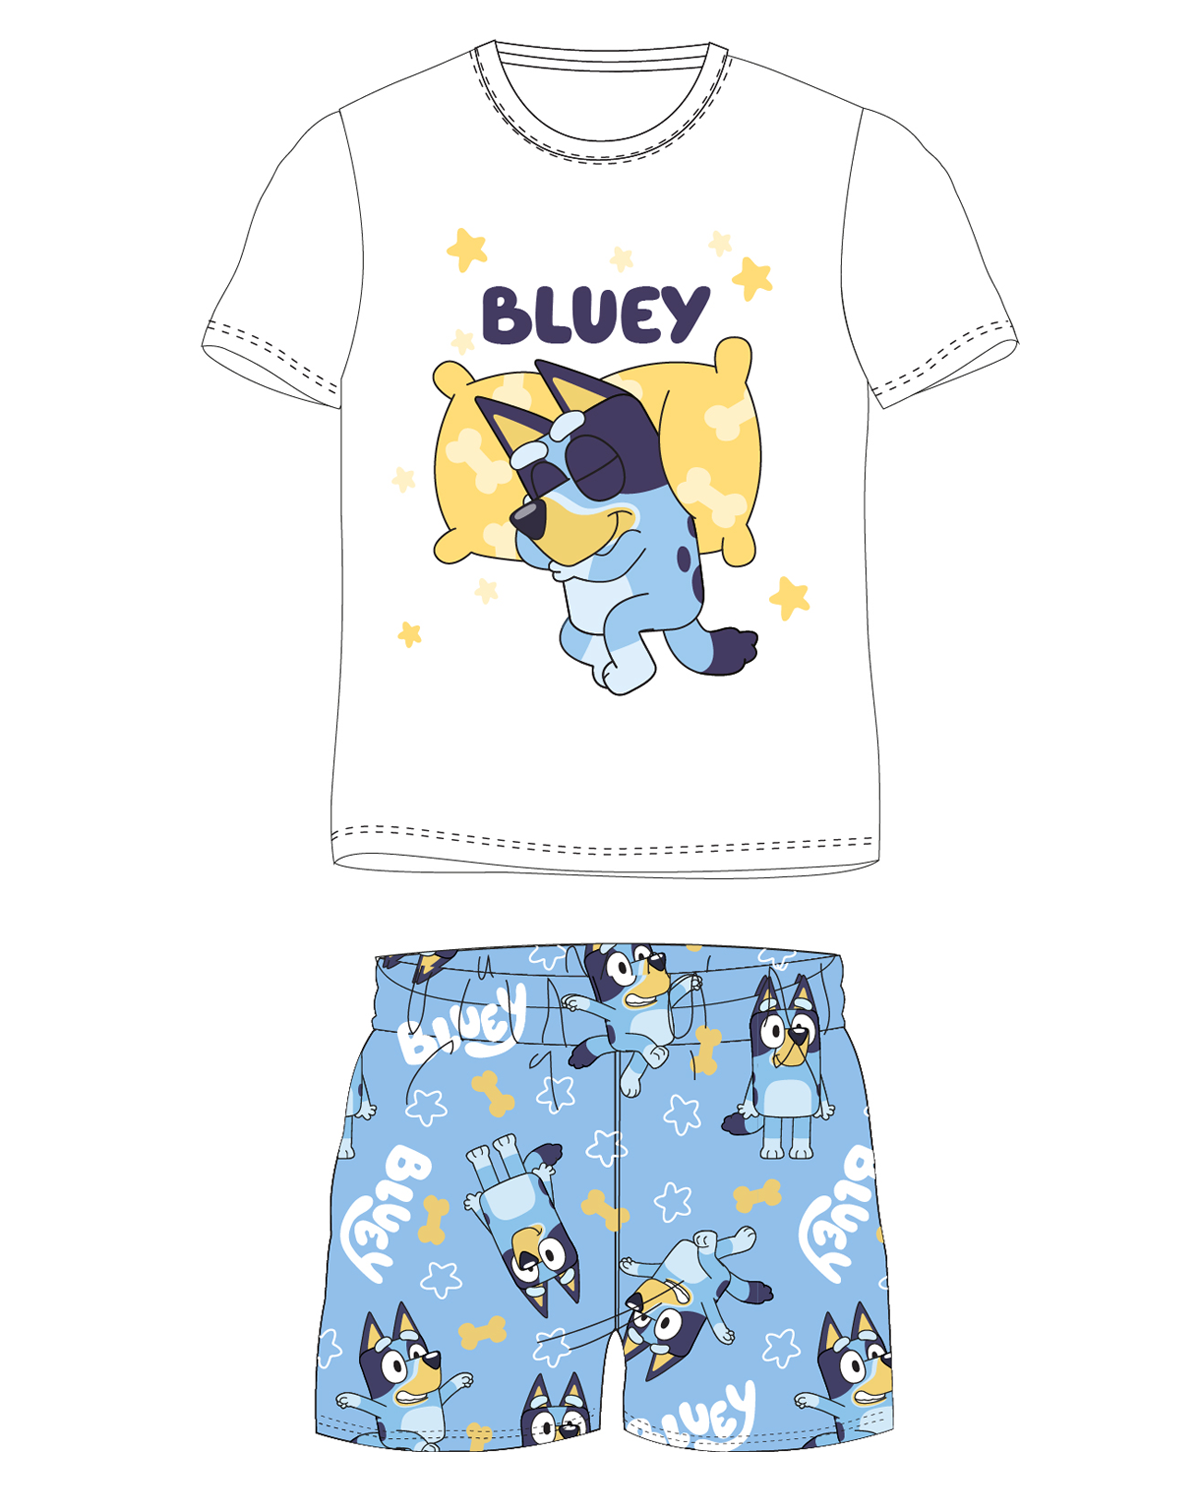 Bluey - licence Chlapecké pyžamo - Bluey 5204009, bílá / světle modrá Barva: Bílá, Velikost: 110